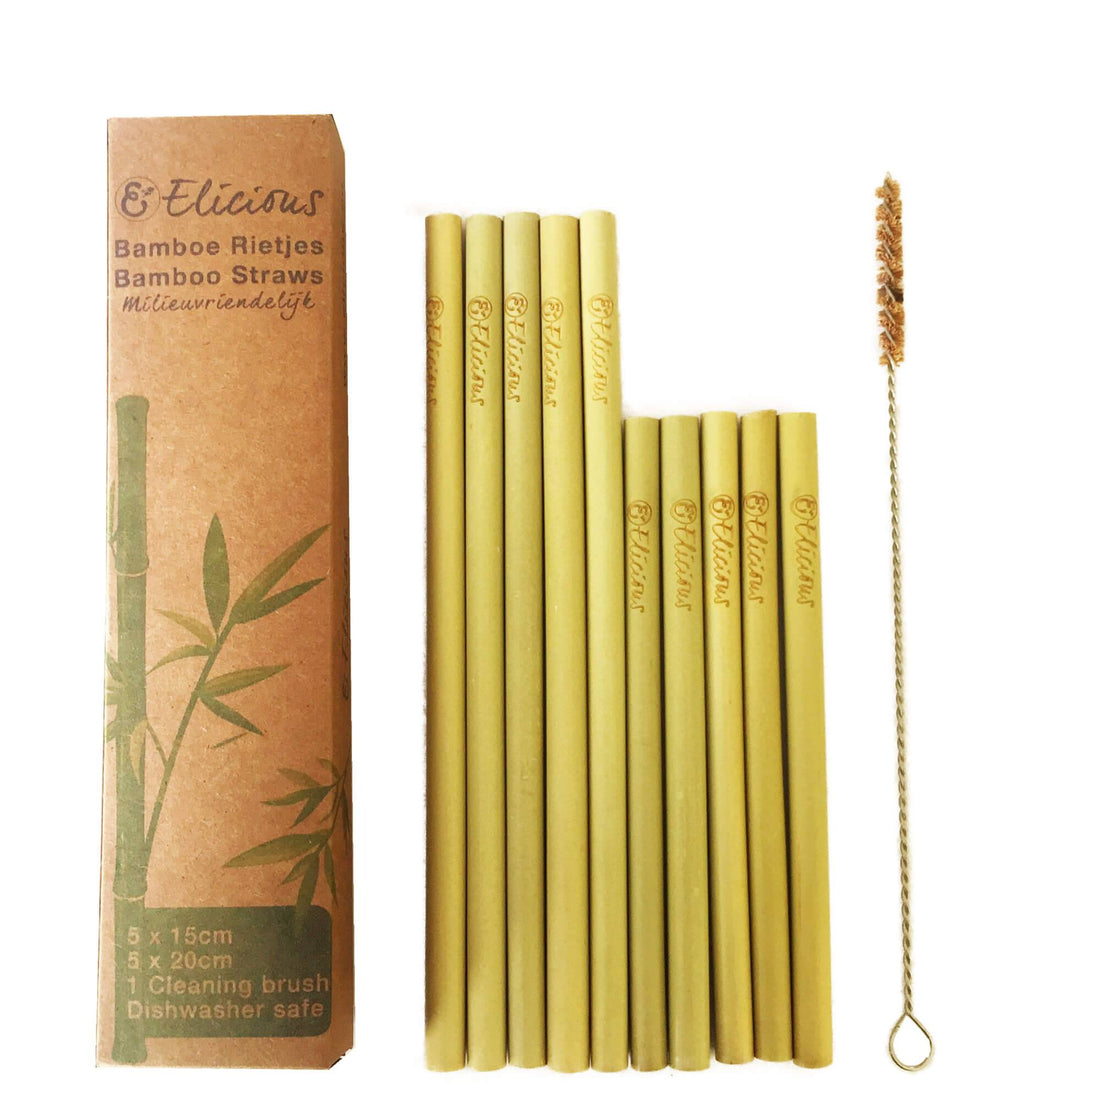 Duurzame bamboe rietjes set van 10 met borsteltje -Elicious